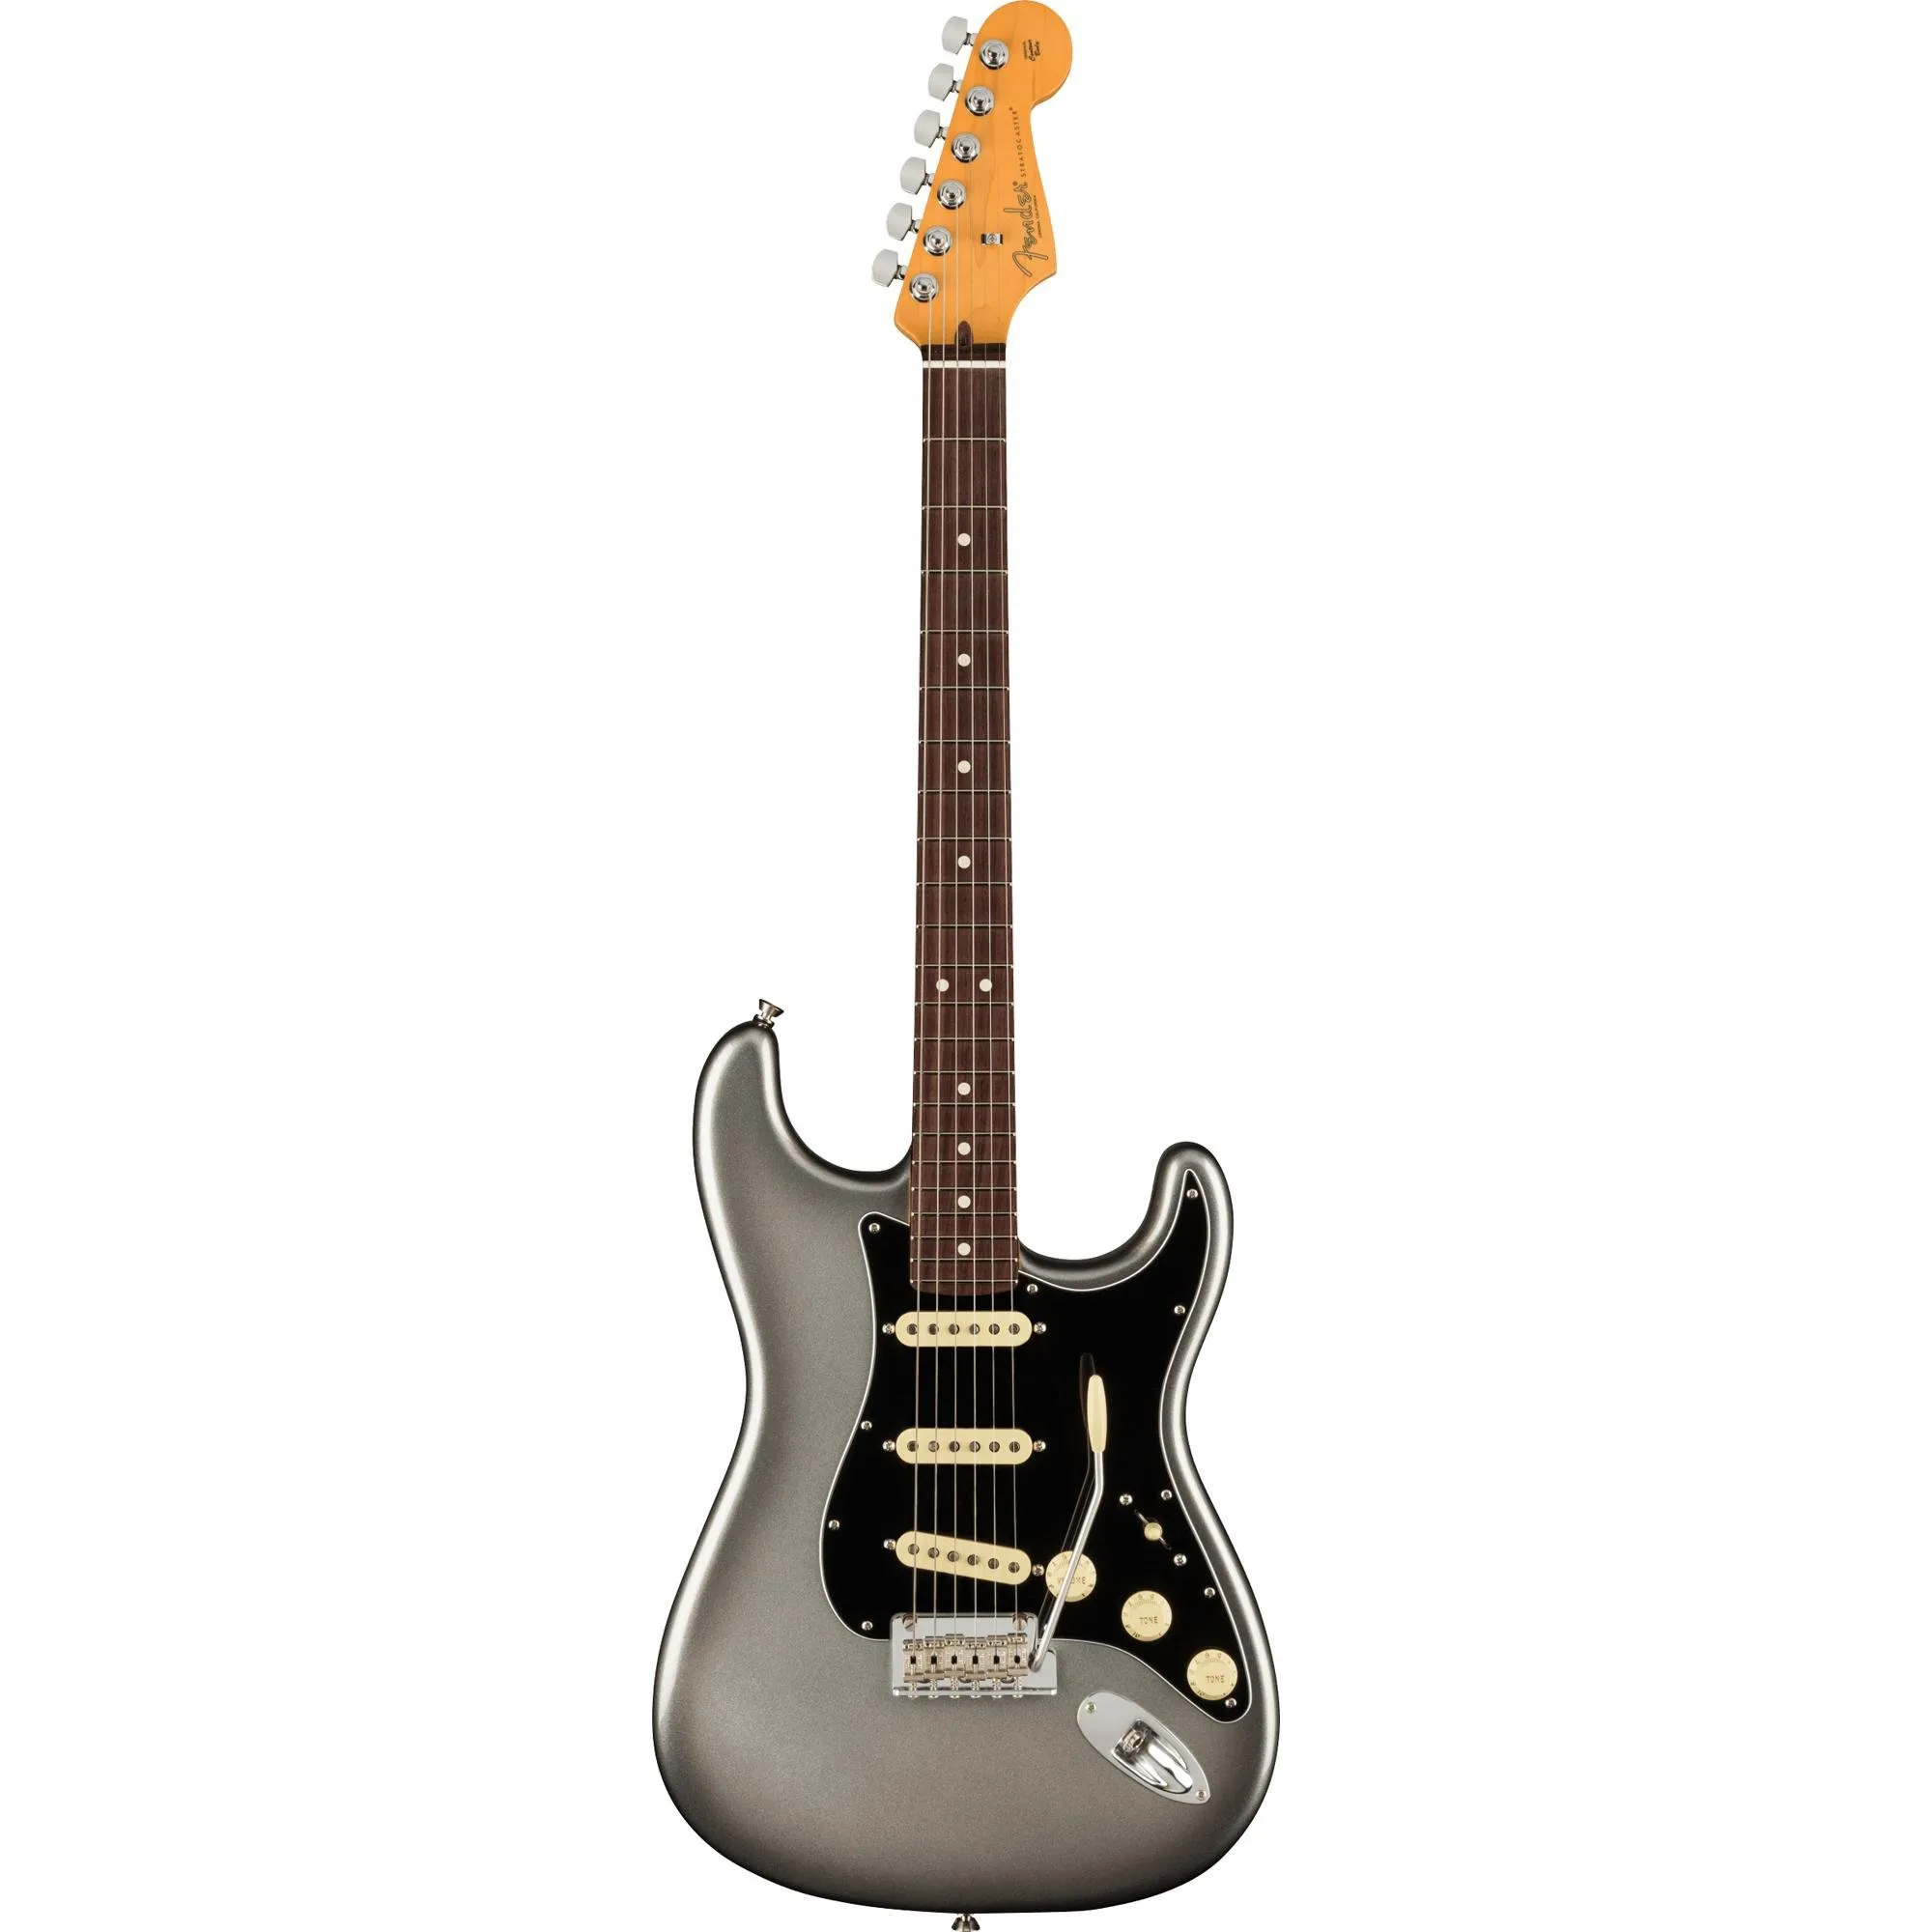 Guitarra Fender Stratocaster American Professional II Mercury  por 22.295,99 à vista no boleto/pix ou parcele em até 12x sem juros. Compre na loja Mundomax!